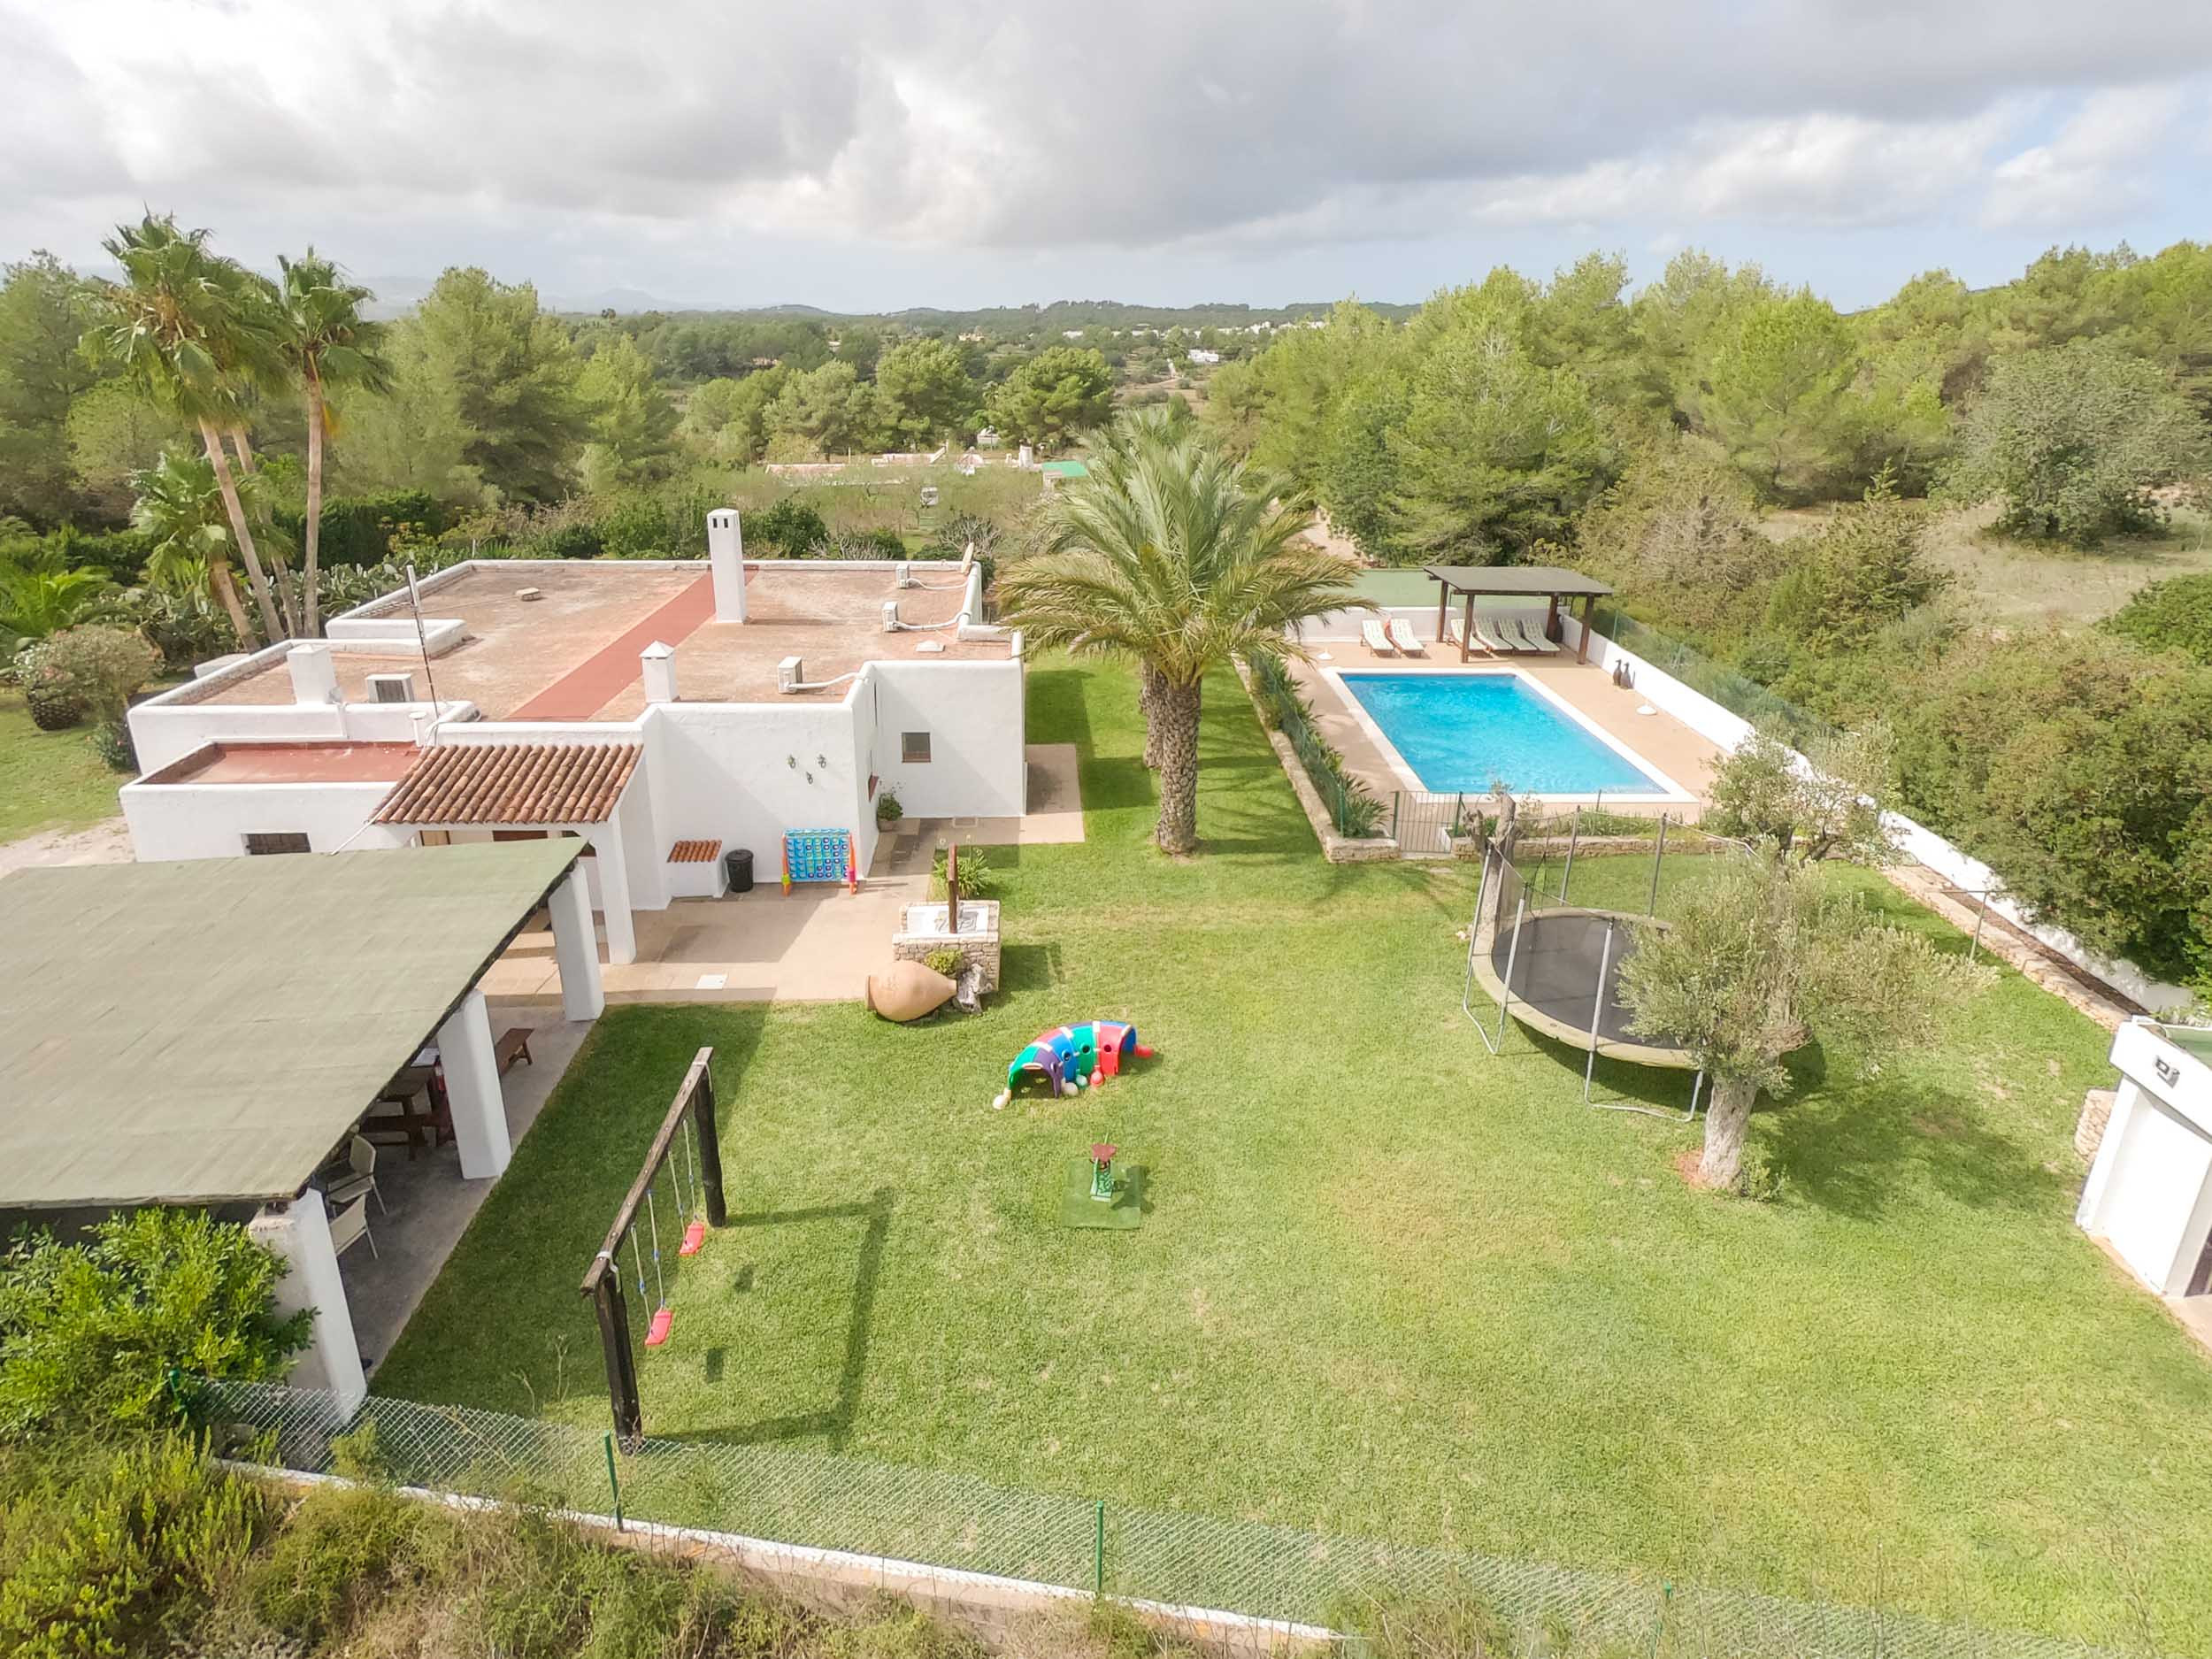 Villa spectaculaire dans l'arrière-pays d'Ibiza, vues aériennes de Casa Gertrudis